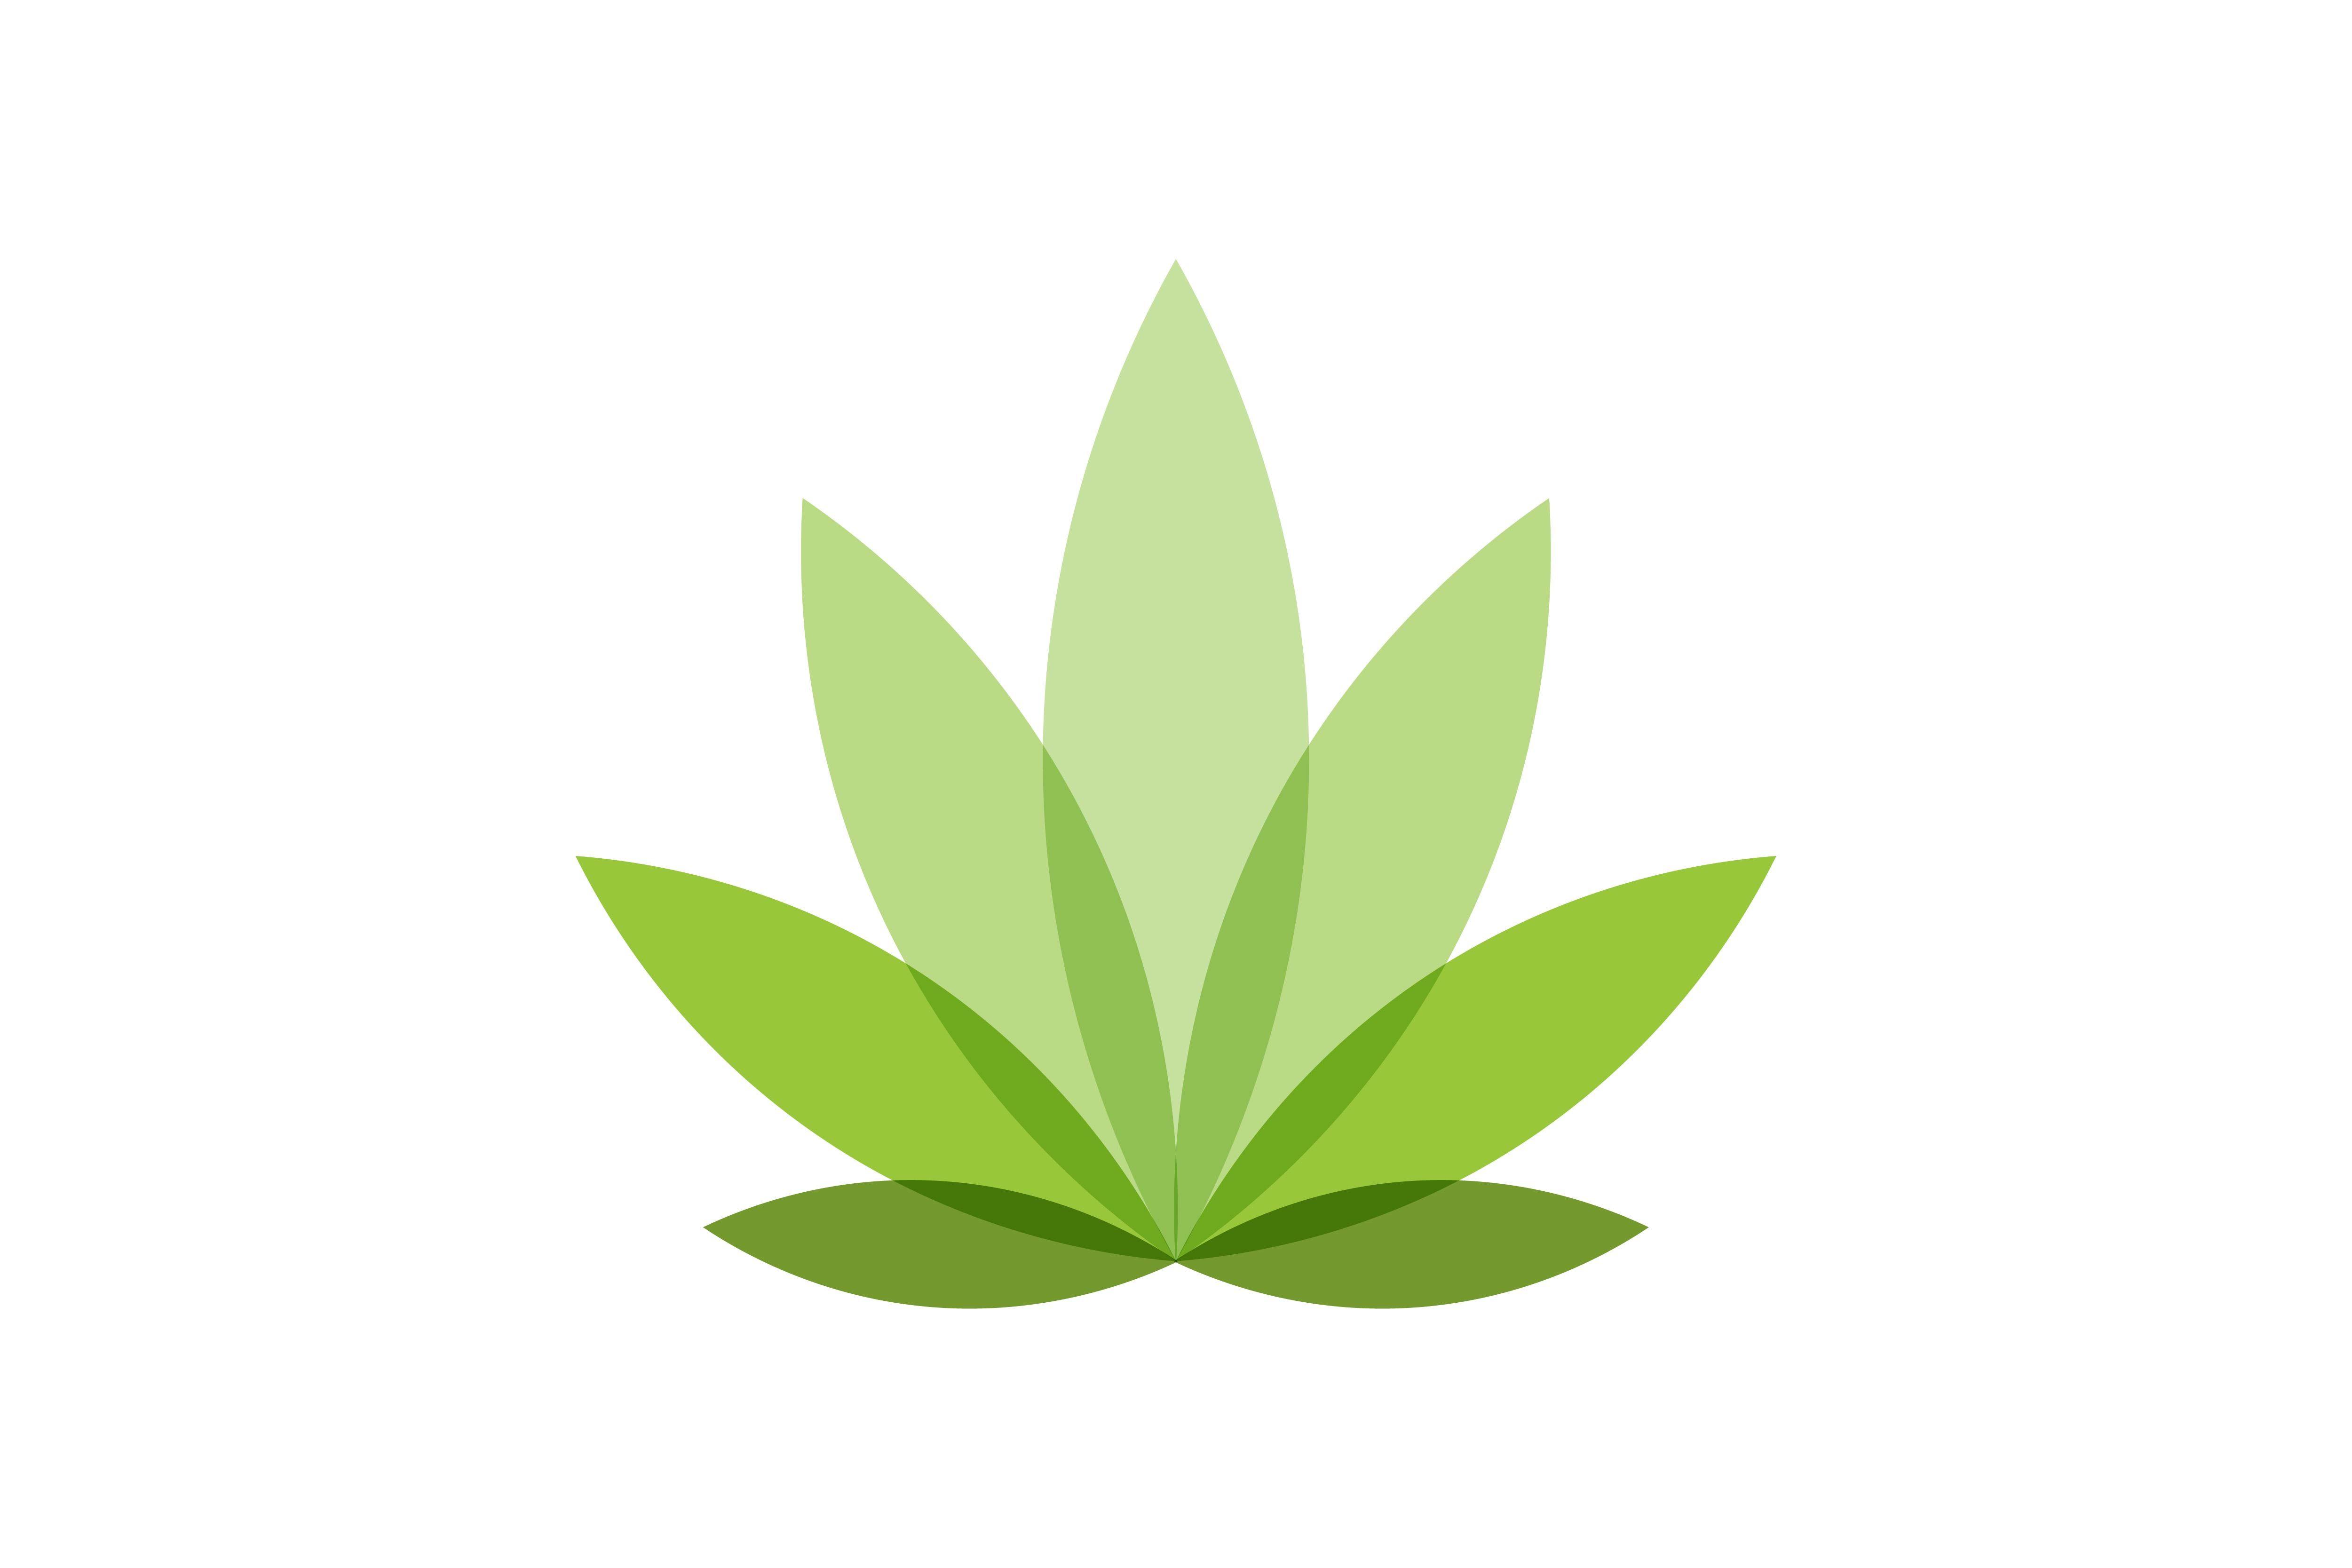 Cannibis Logo - Cannabis leaf logo